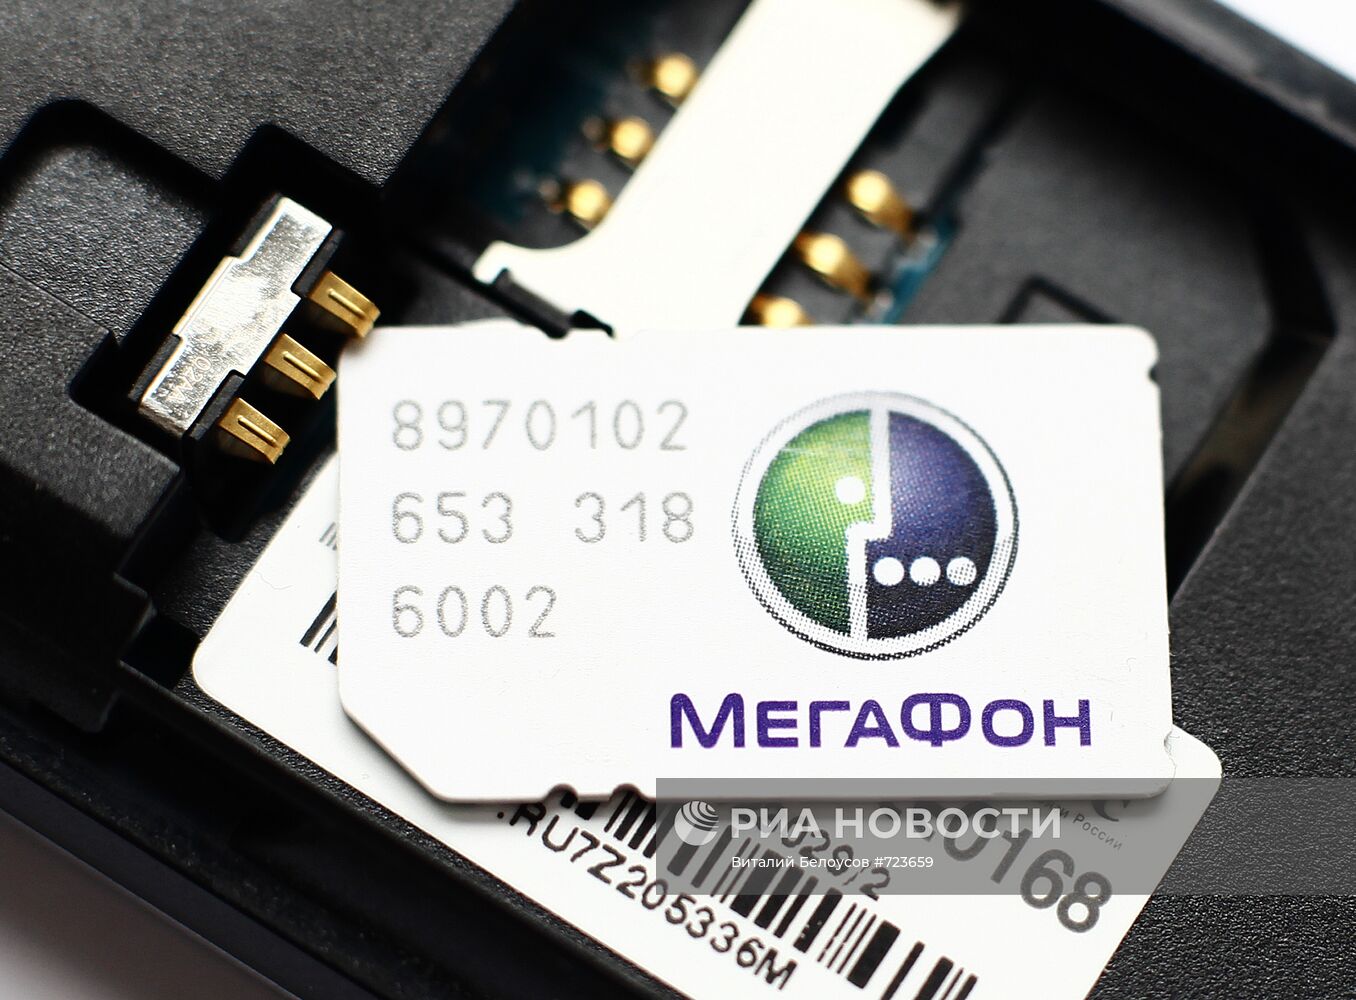 Сим-карта с логотипом оператора сотовой связи "Мегафон"